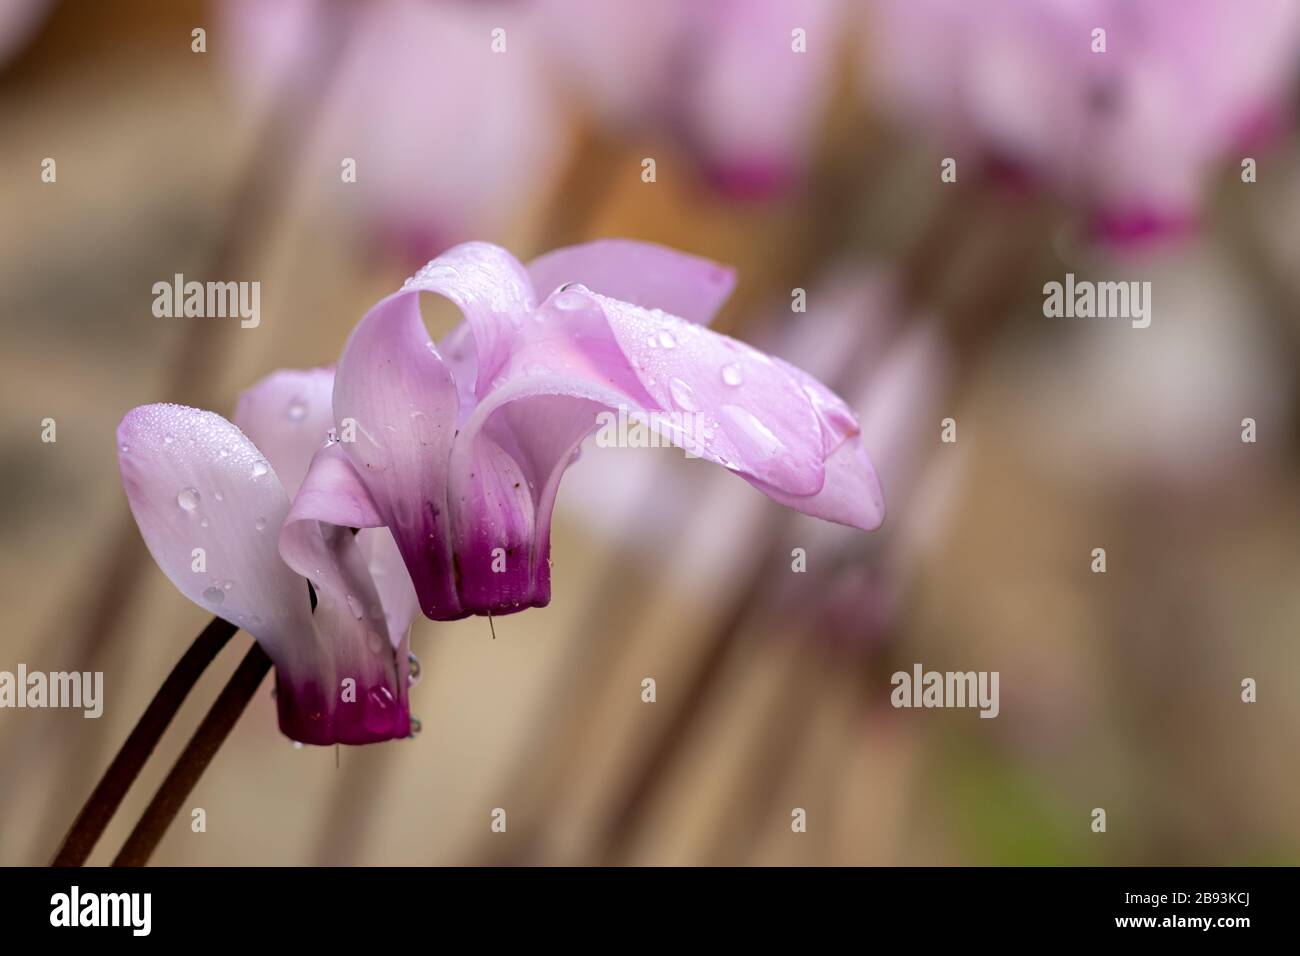 Fleurs de cyclamen blanches et roses avec de petites gouttes de rosée sur fond flou de pétales Banque D'Images